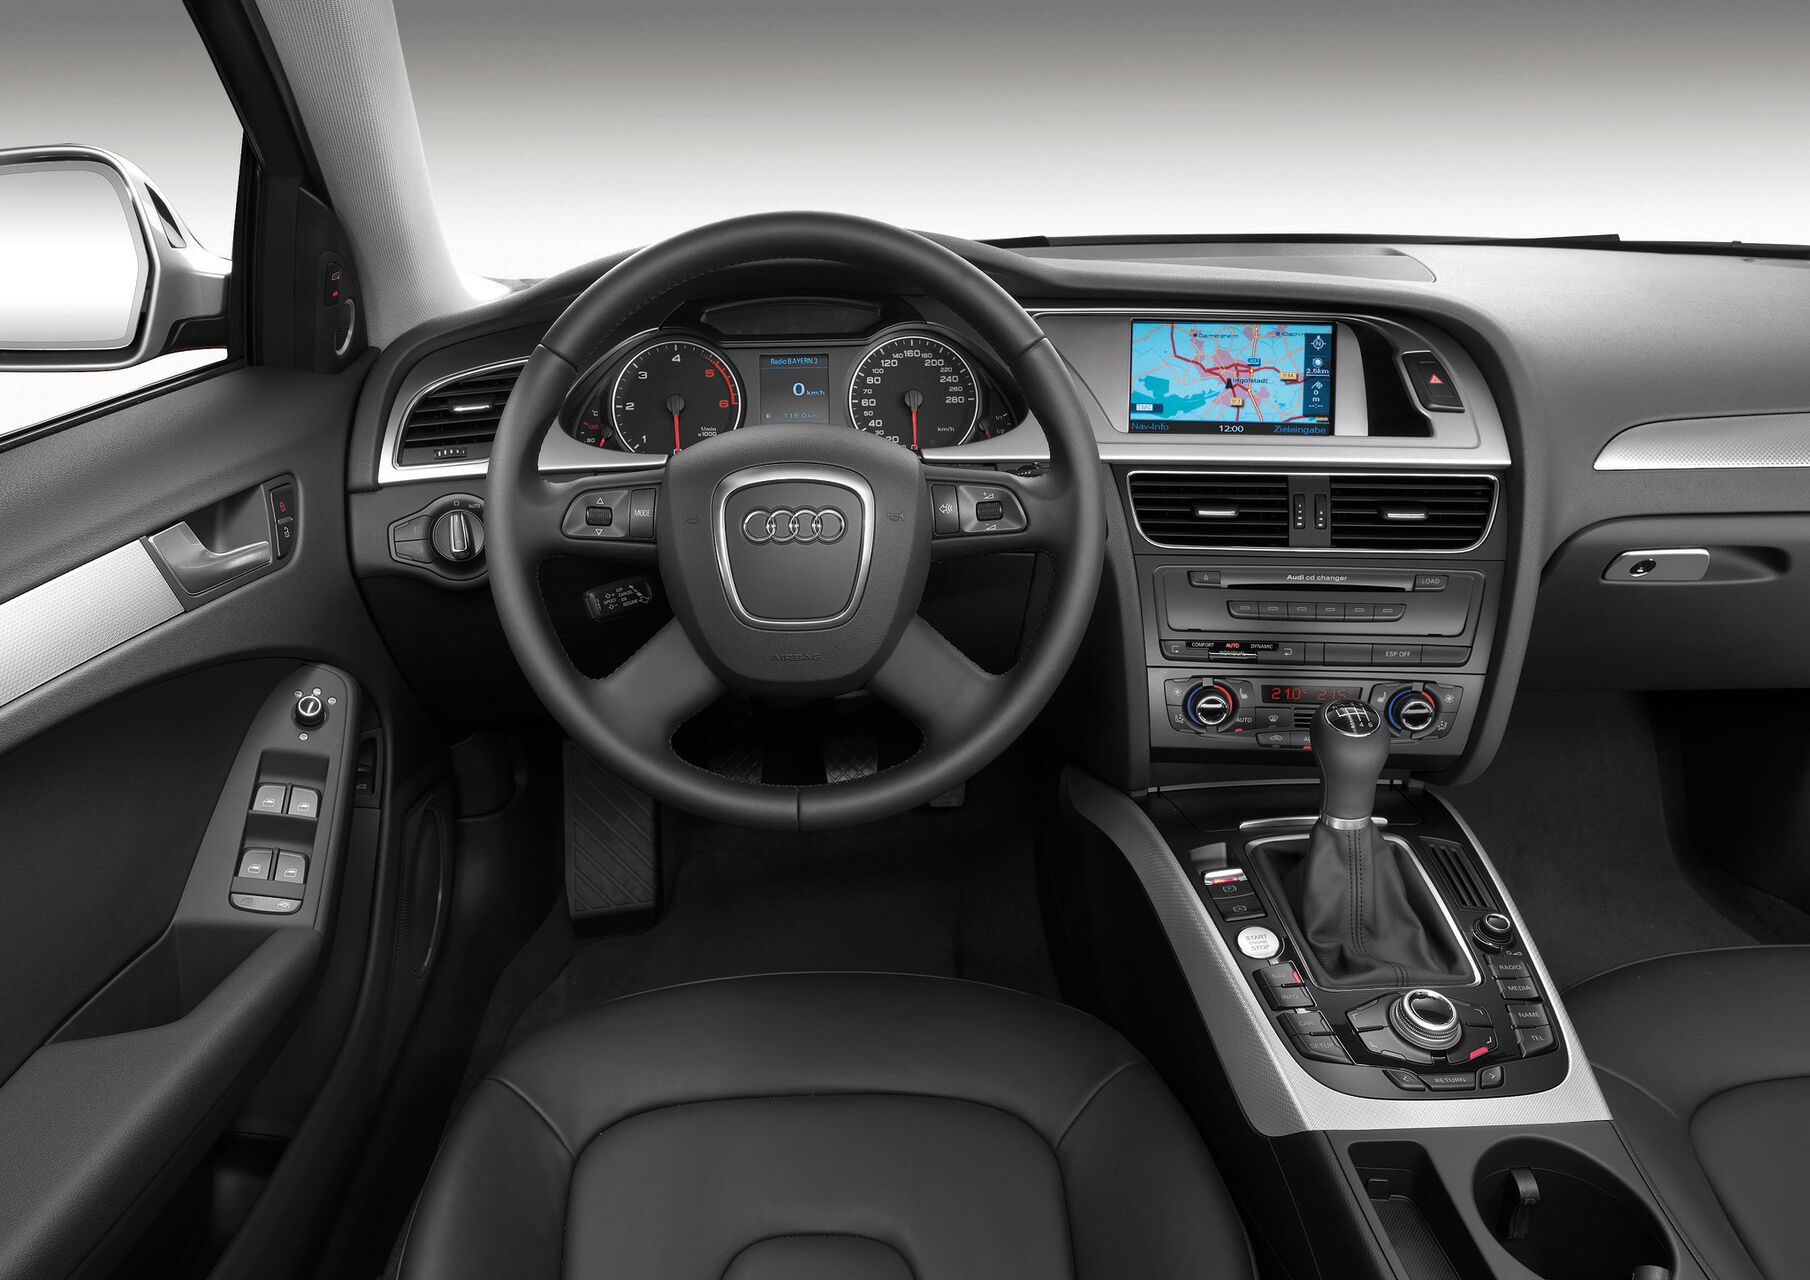 Audi A4 (B8 8K) 2.0 TDI (143 Hp) quattro 2008 - 2011 Specs and Technical  Data, Fuel Consumption, Dimensions